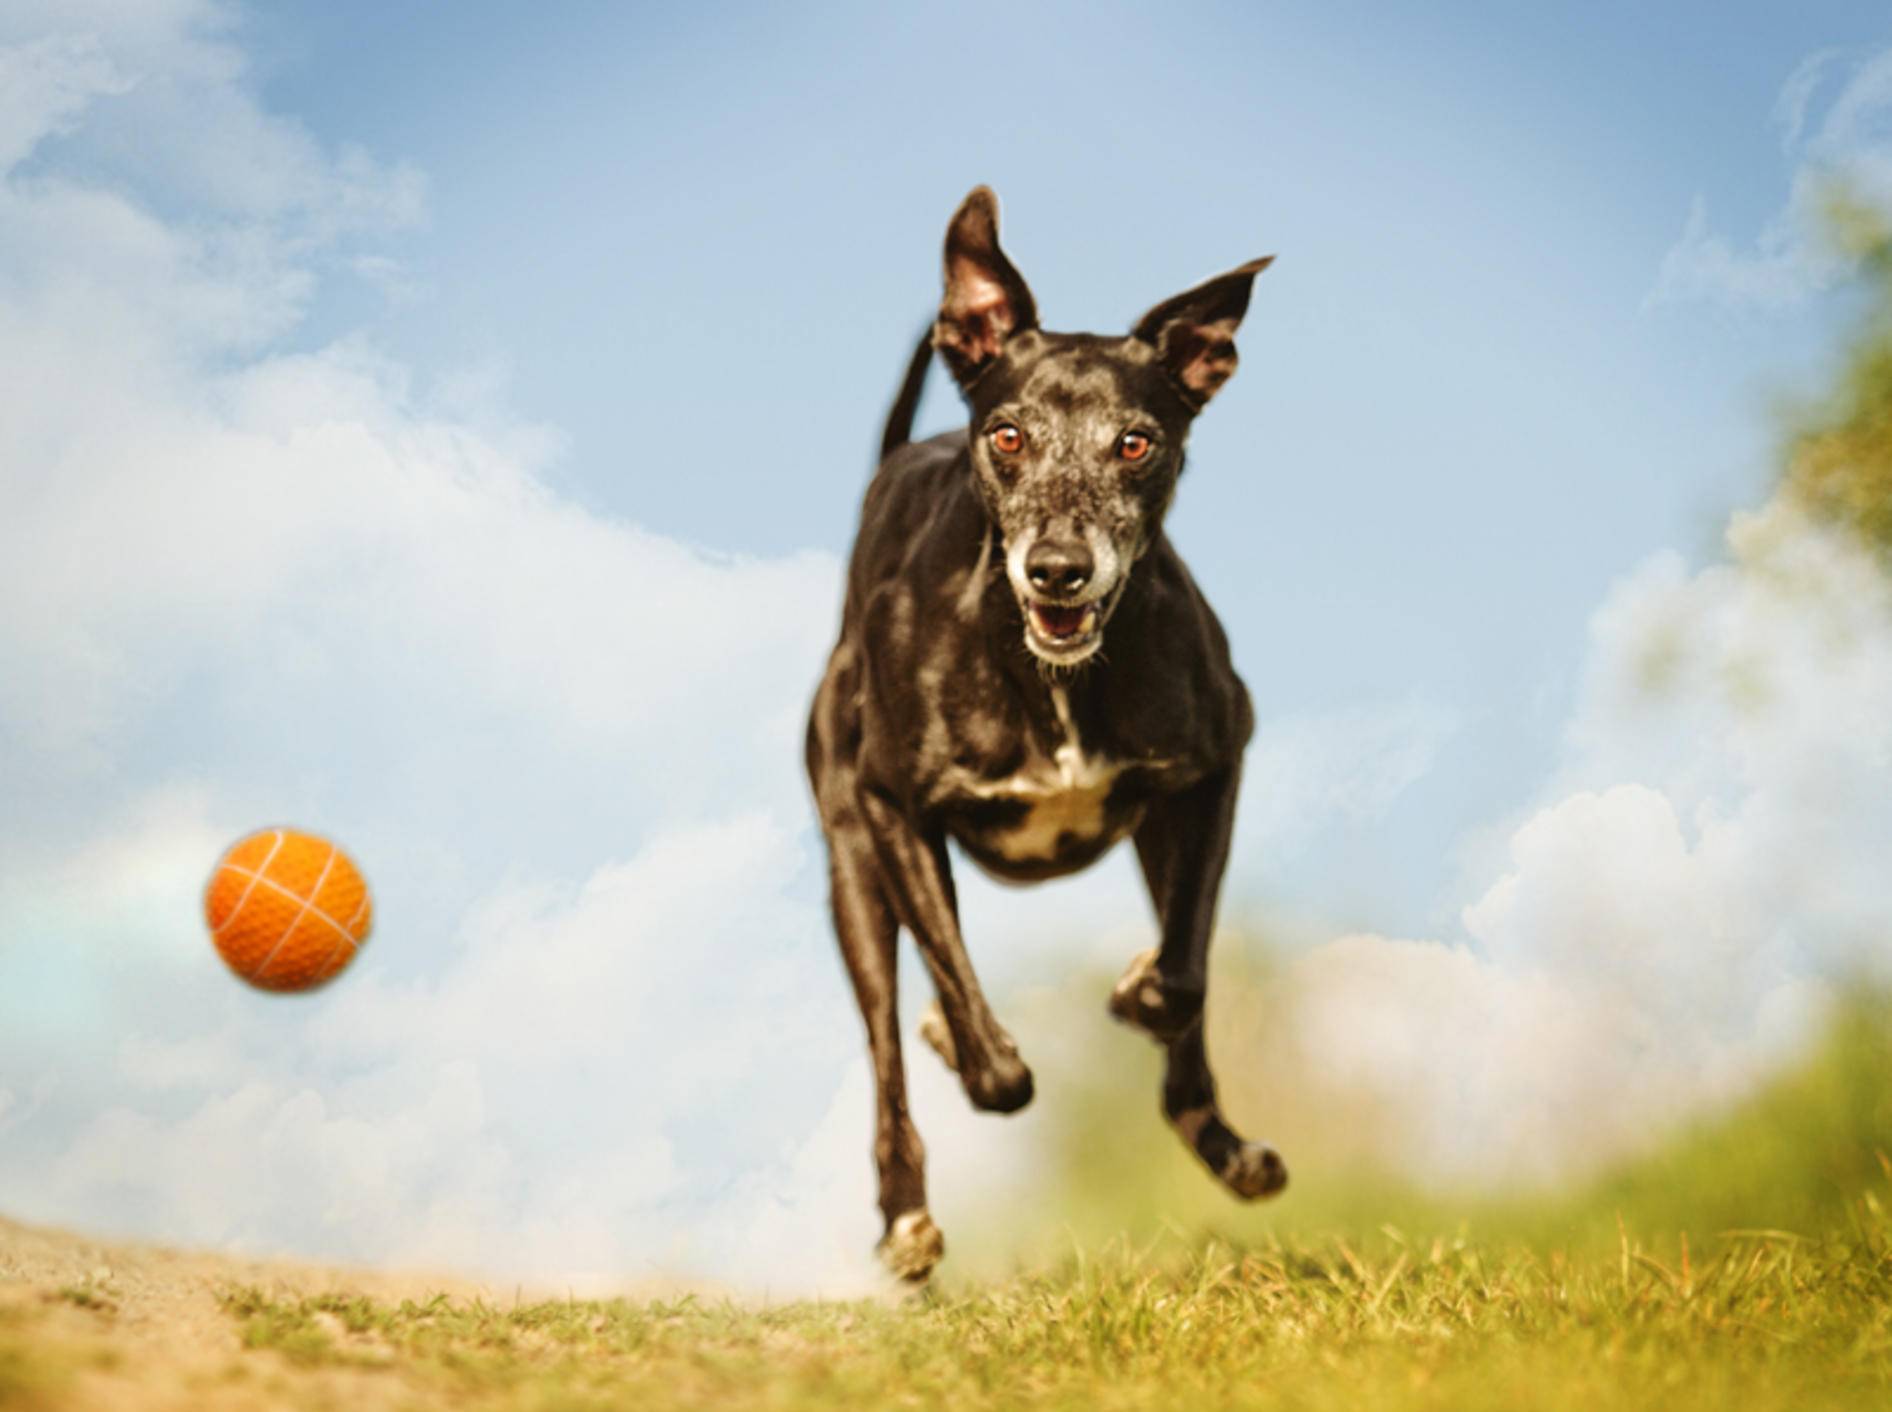 Fließender Übergang zu Suchtverhalten: Hat der Hund noch Spaß am Spiel oder ist er davon besessen? – Shutterstock / Best dog photo